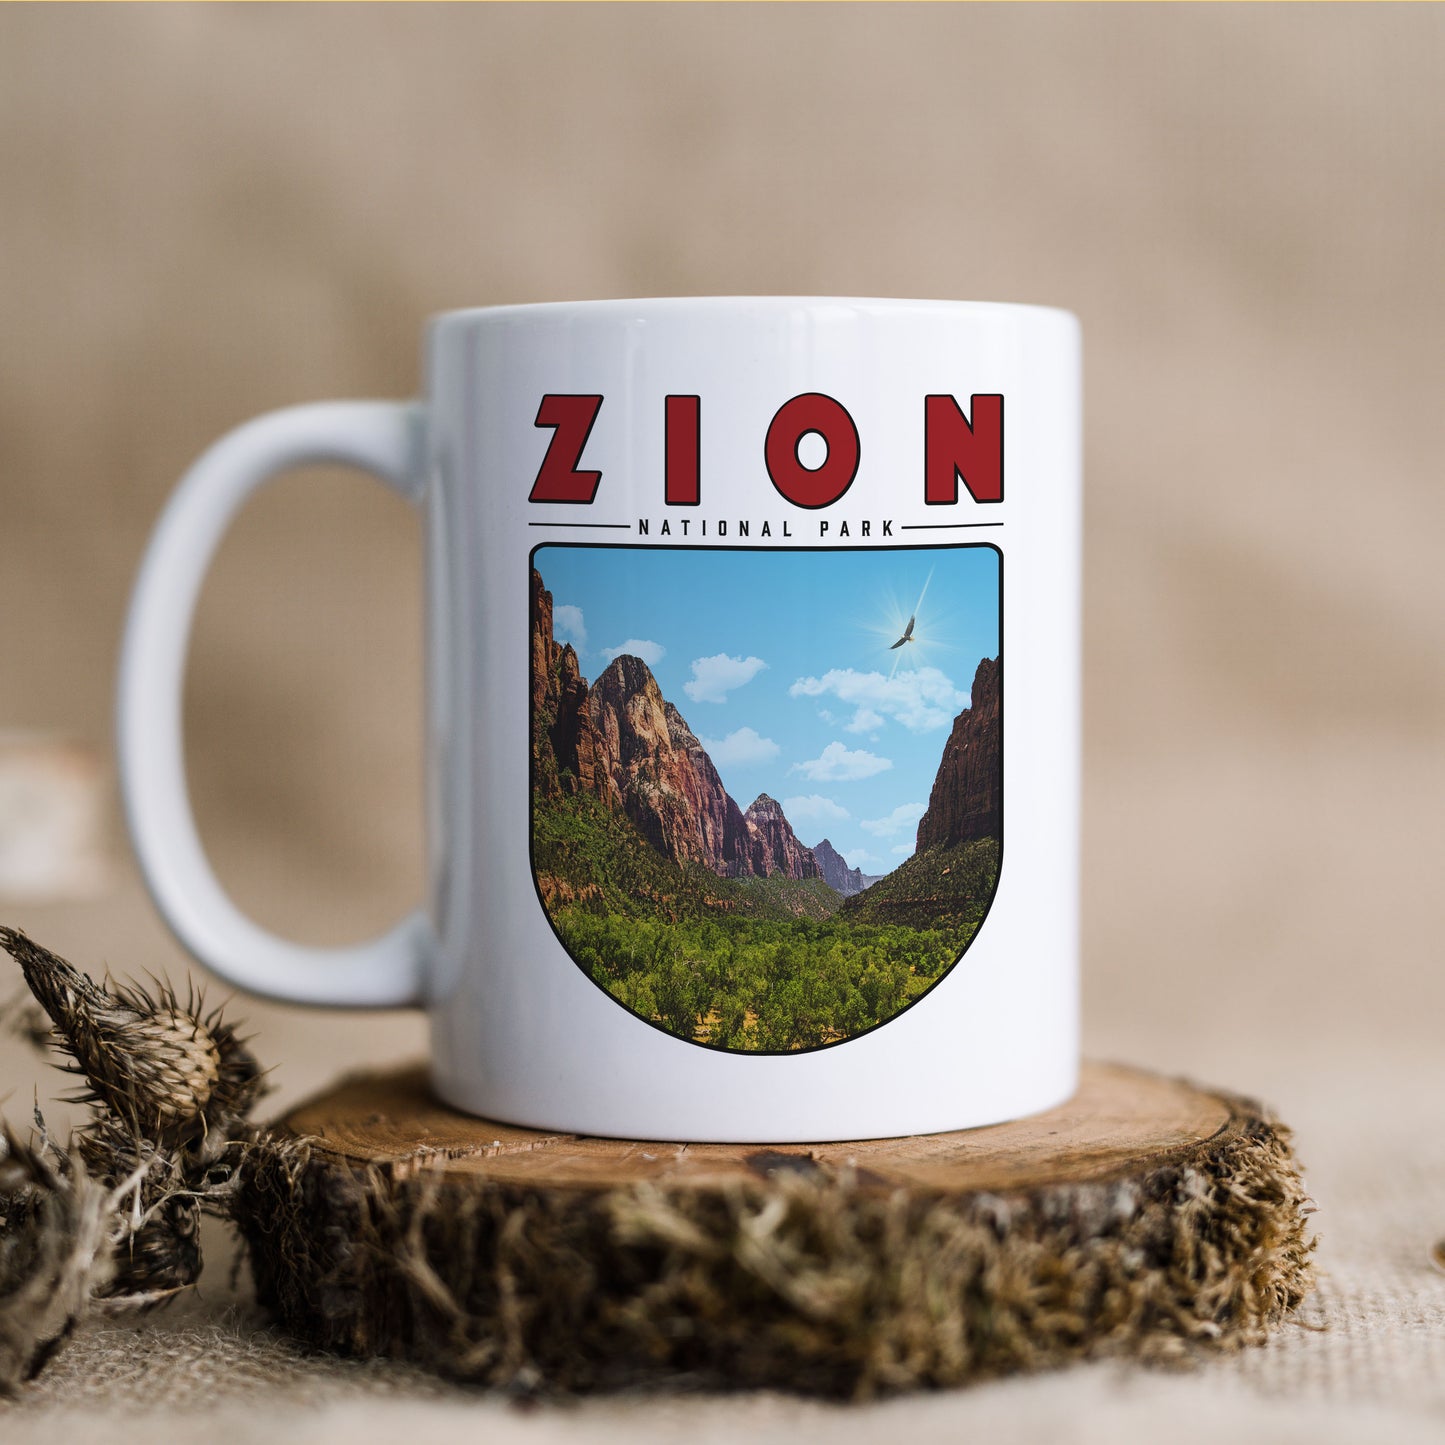 Zion National Park - Ceramic Mug